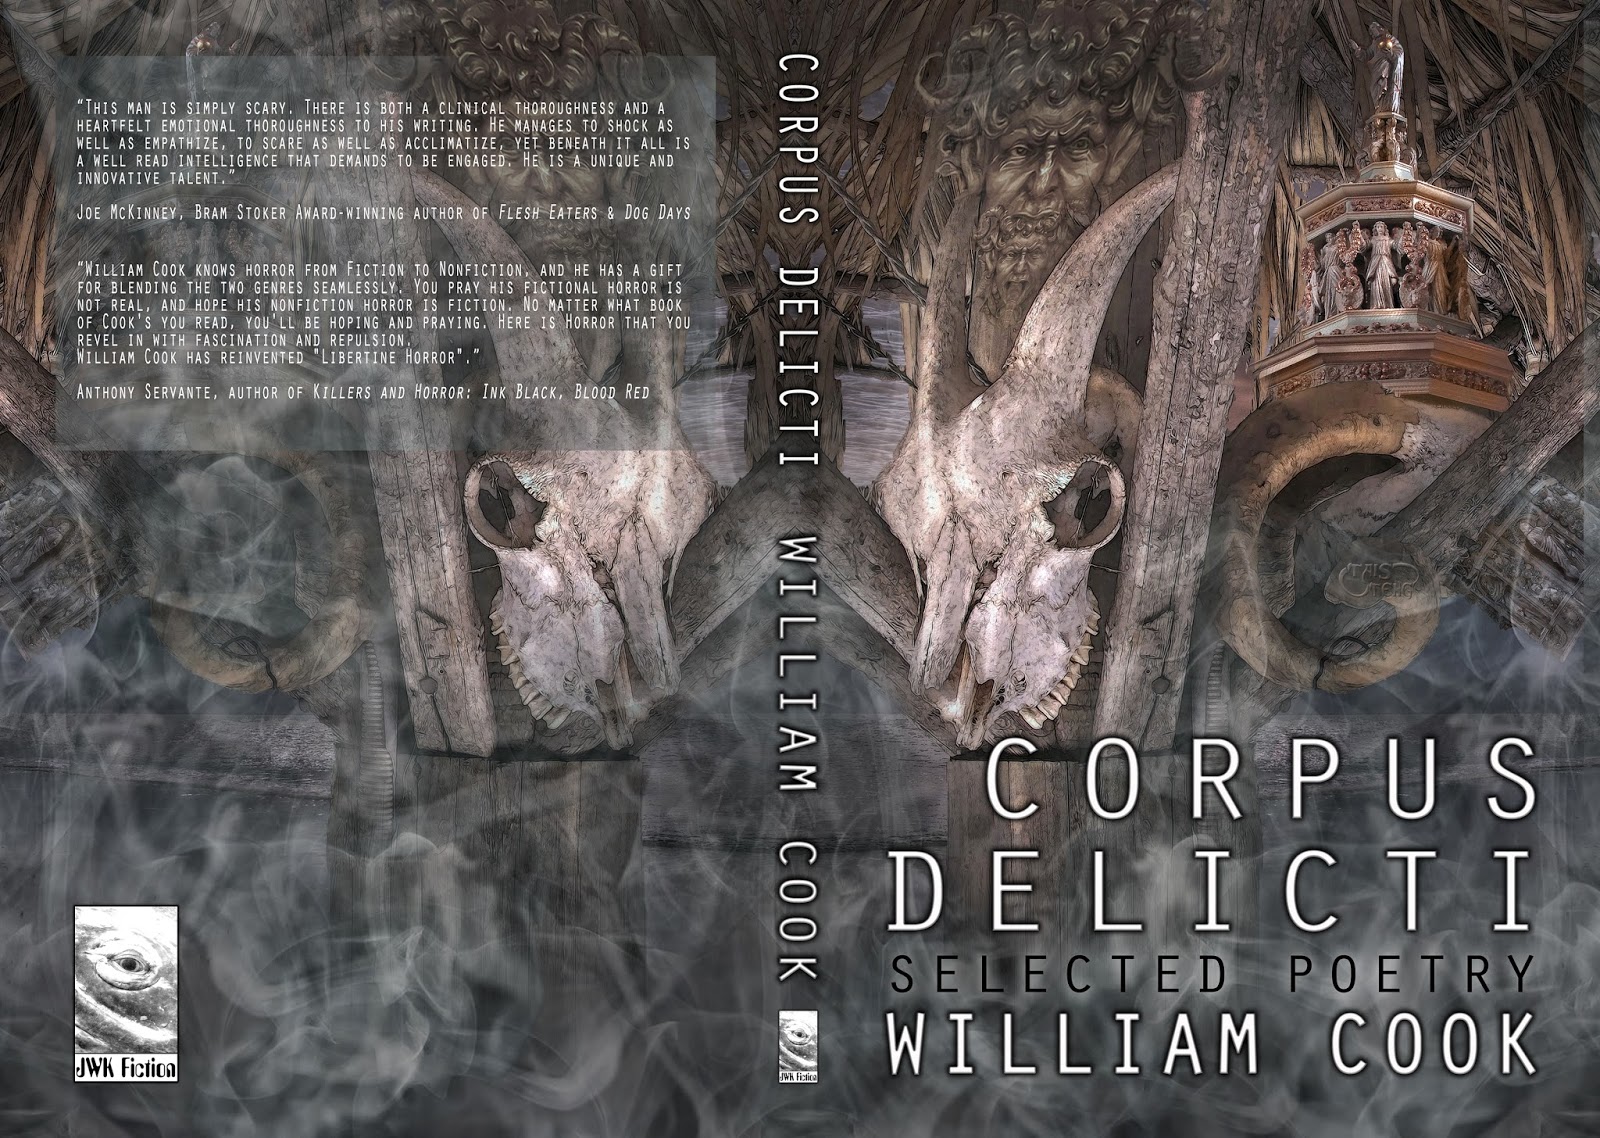 http://www.amazon.com/Corpus-Delicti-William-Cook-ebook/dp/B00K2AY04A/ref=sr_1_1?s=digital-text&ie=UTF8&qid=1401082312&sr=1-1&keywords=william+cook+corpus+delicti